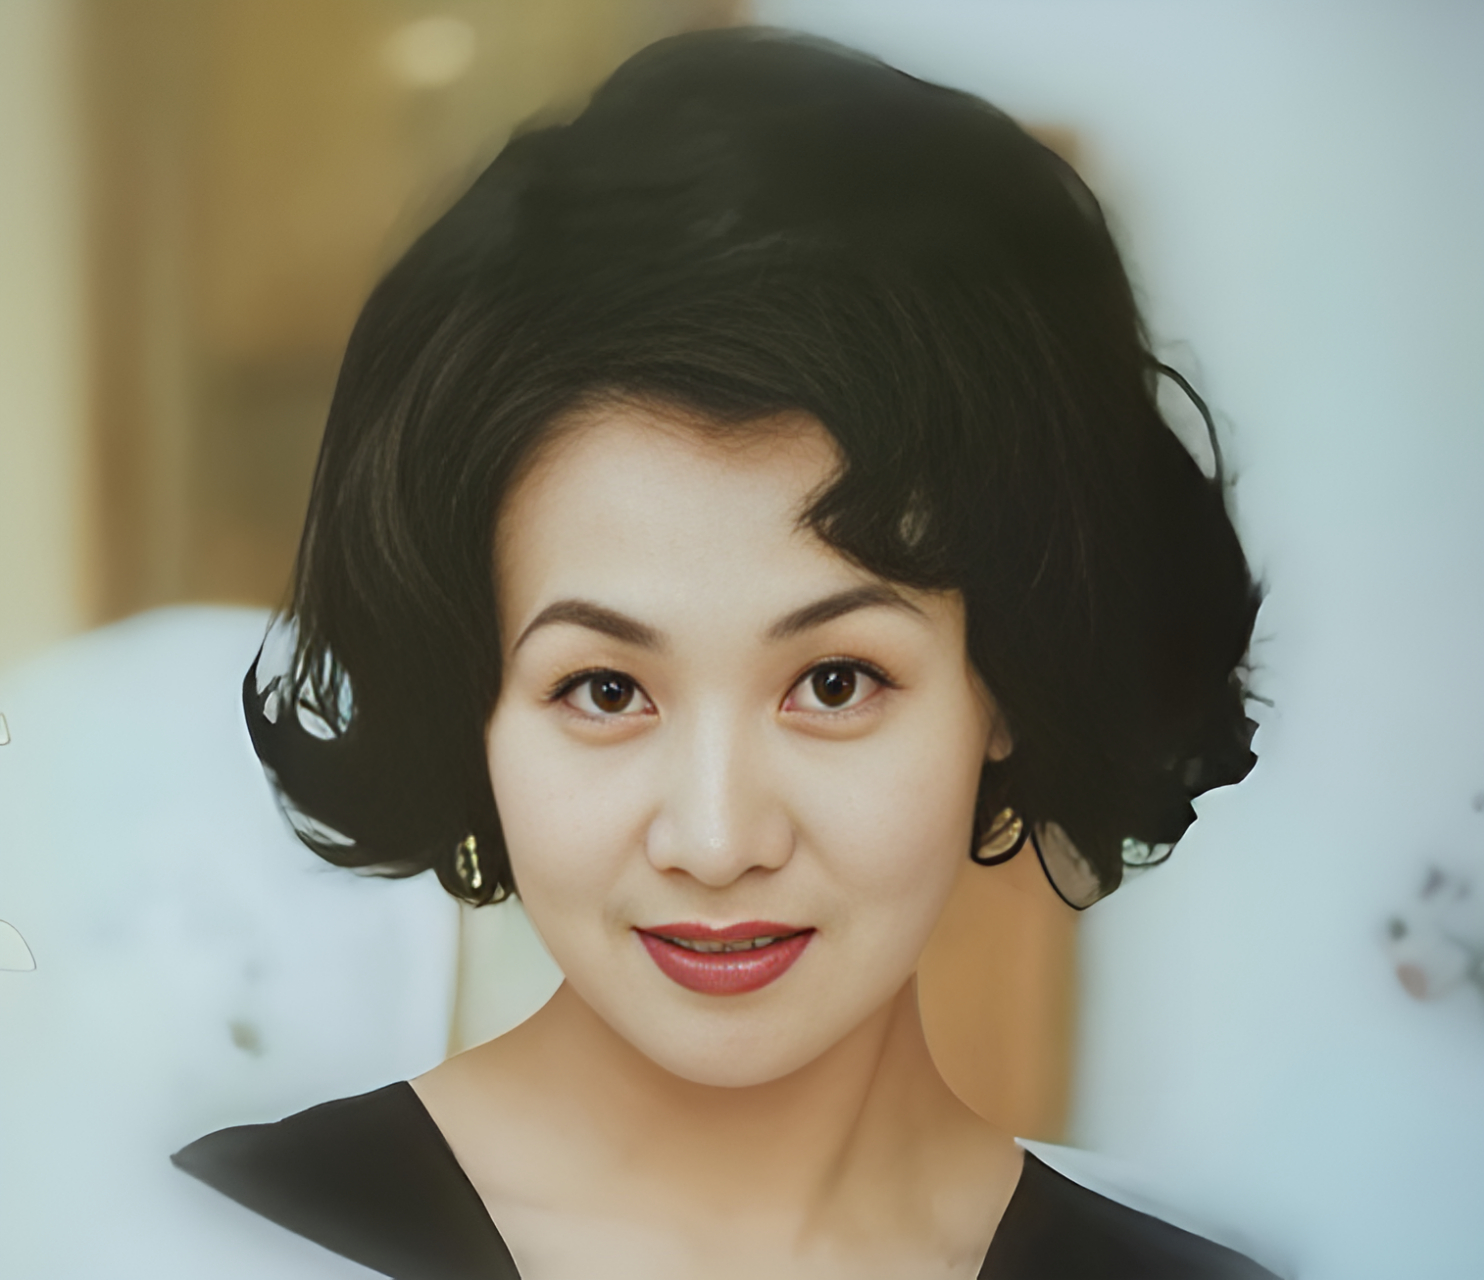 1998年,李媛媛刚刚过了37岁生日,因拍摄《香港的故事》而荣获金鹰视后